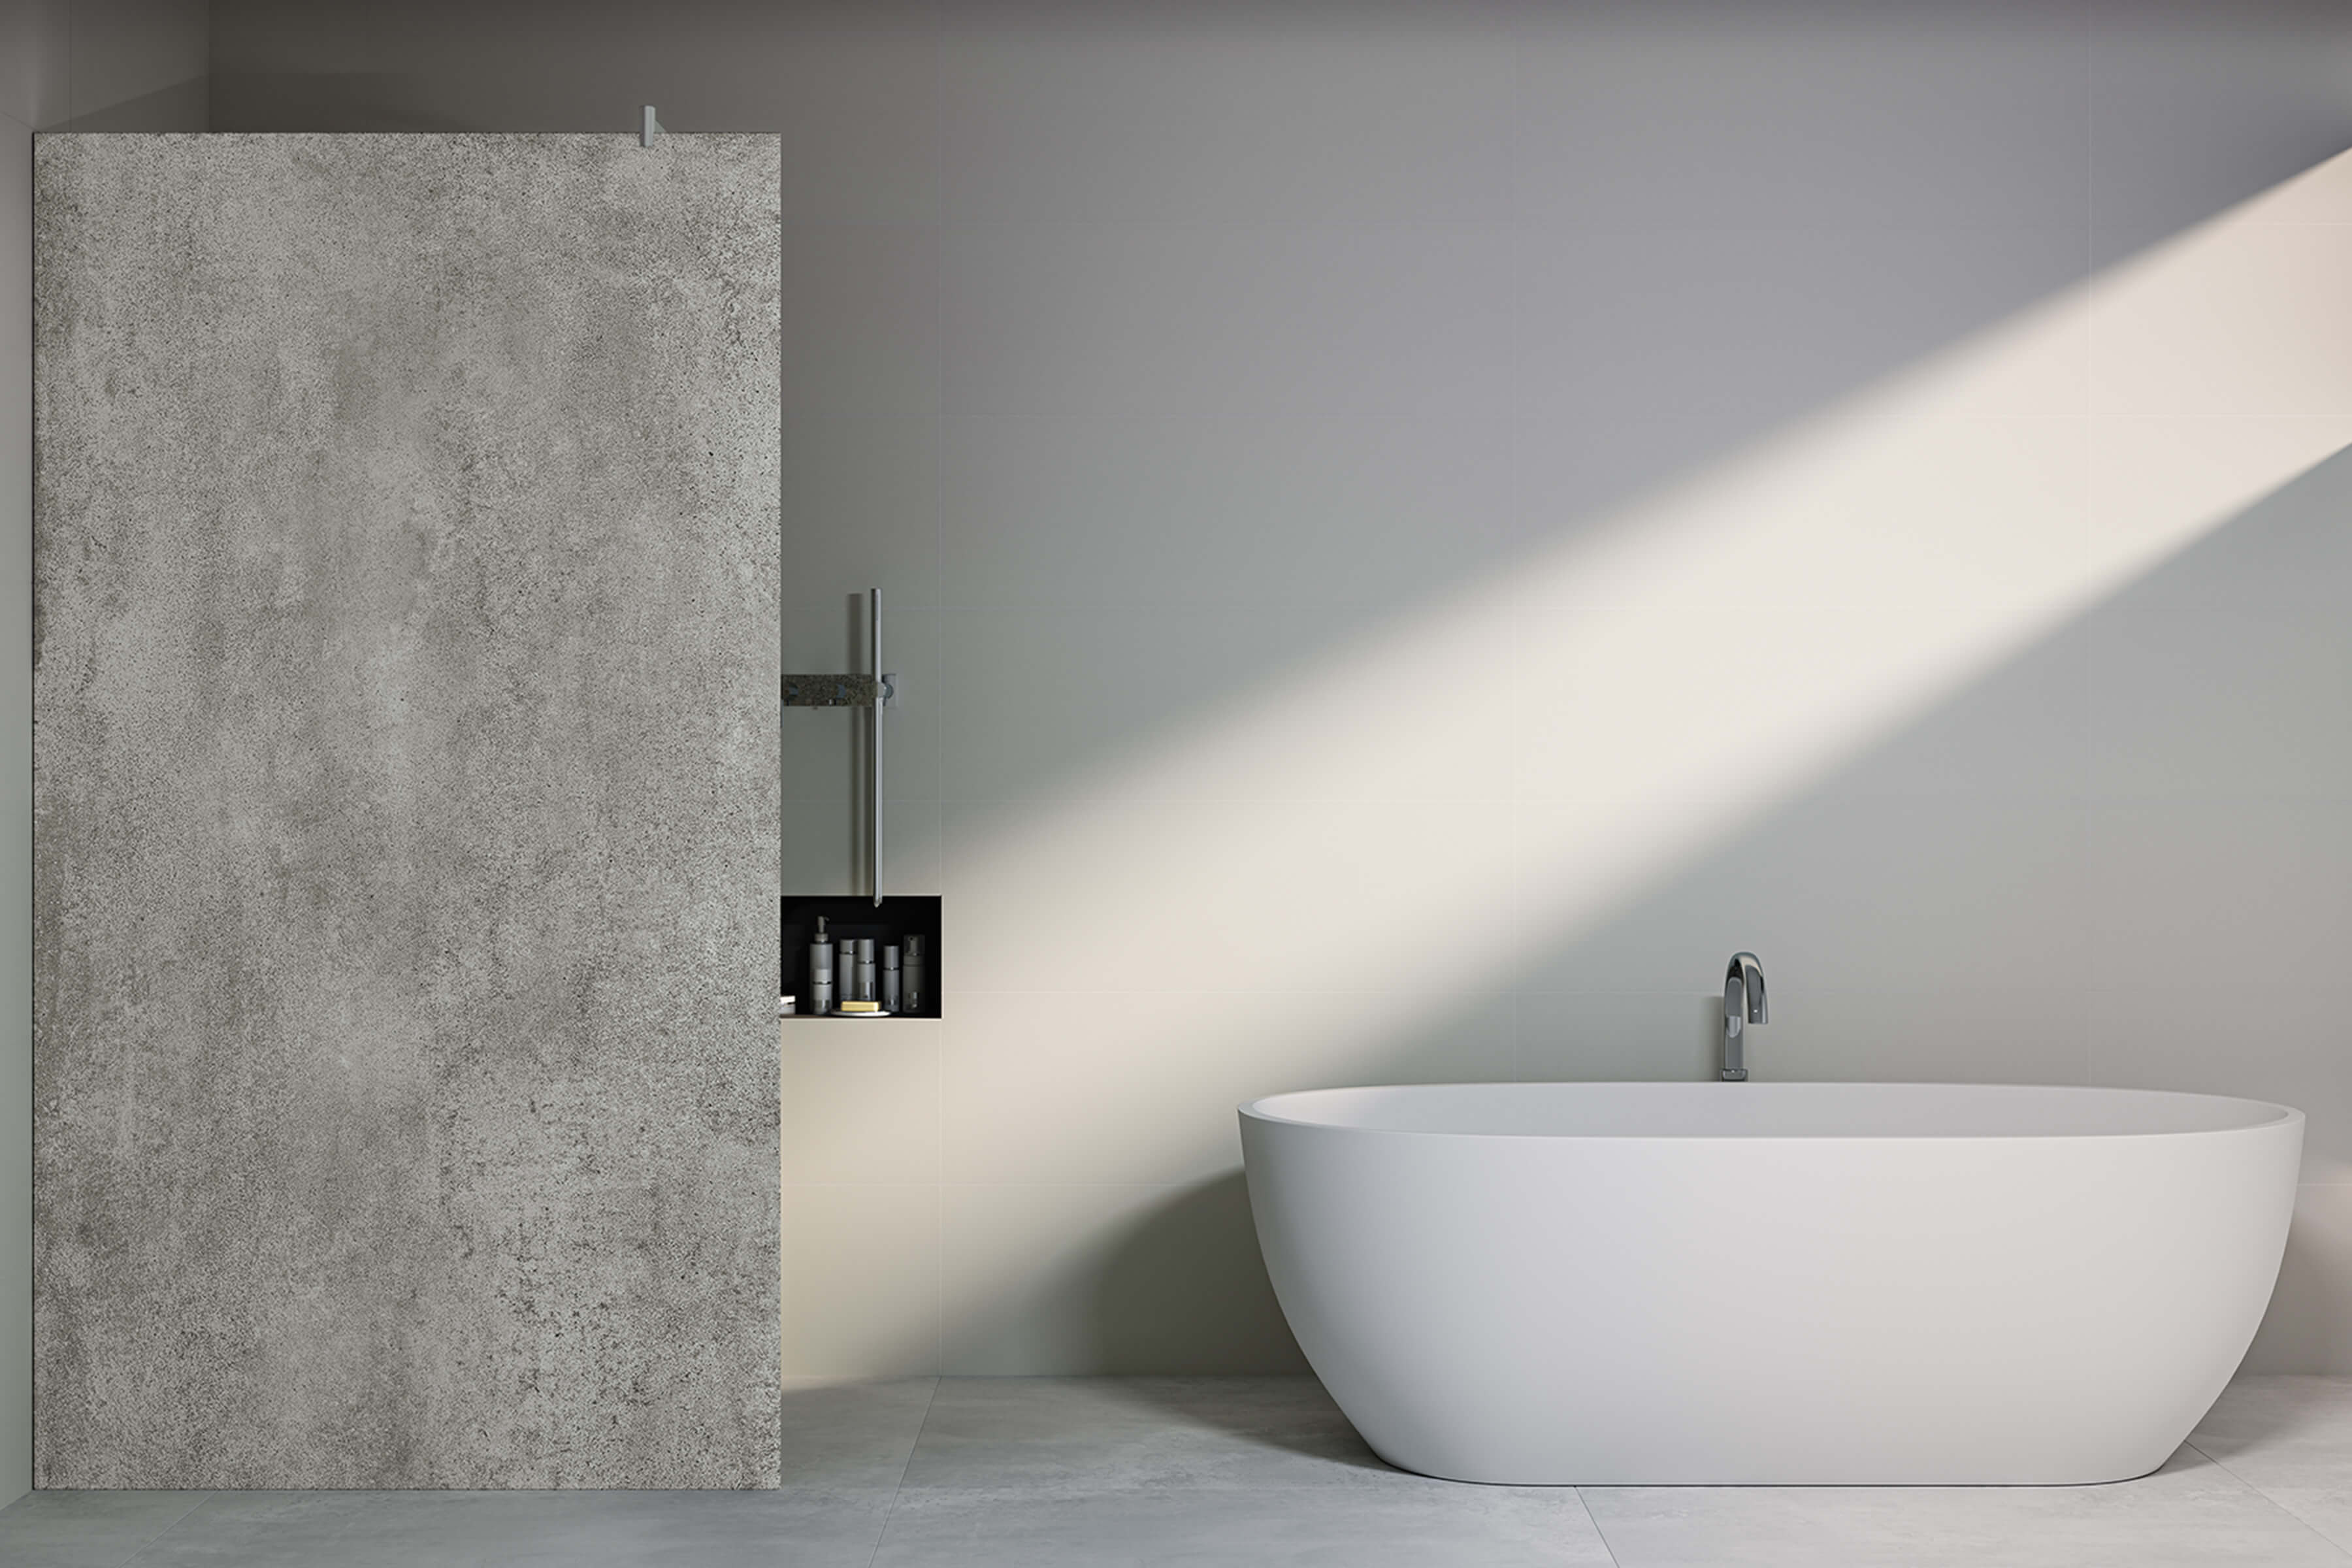 Modernes, minimalistisches Badezimmer  mit einer hellgrauen KERBON-Duschwandabtrennung